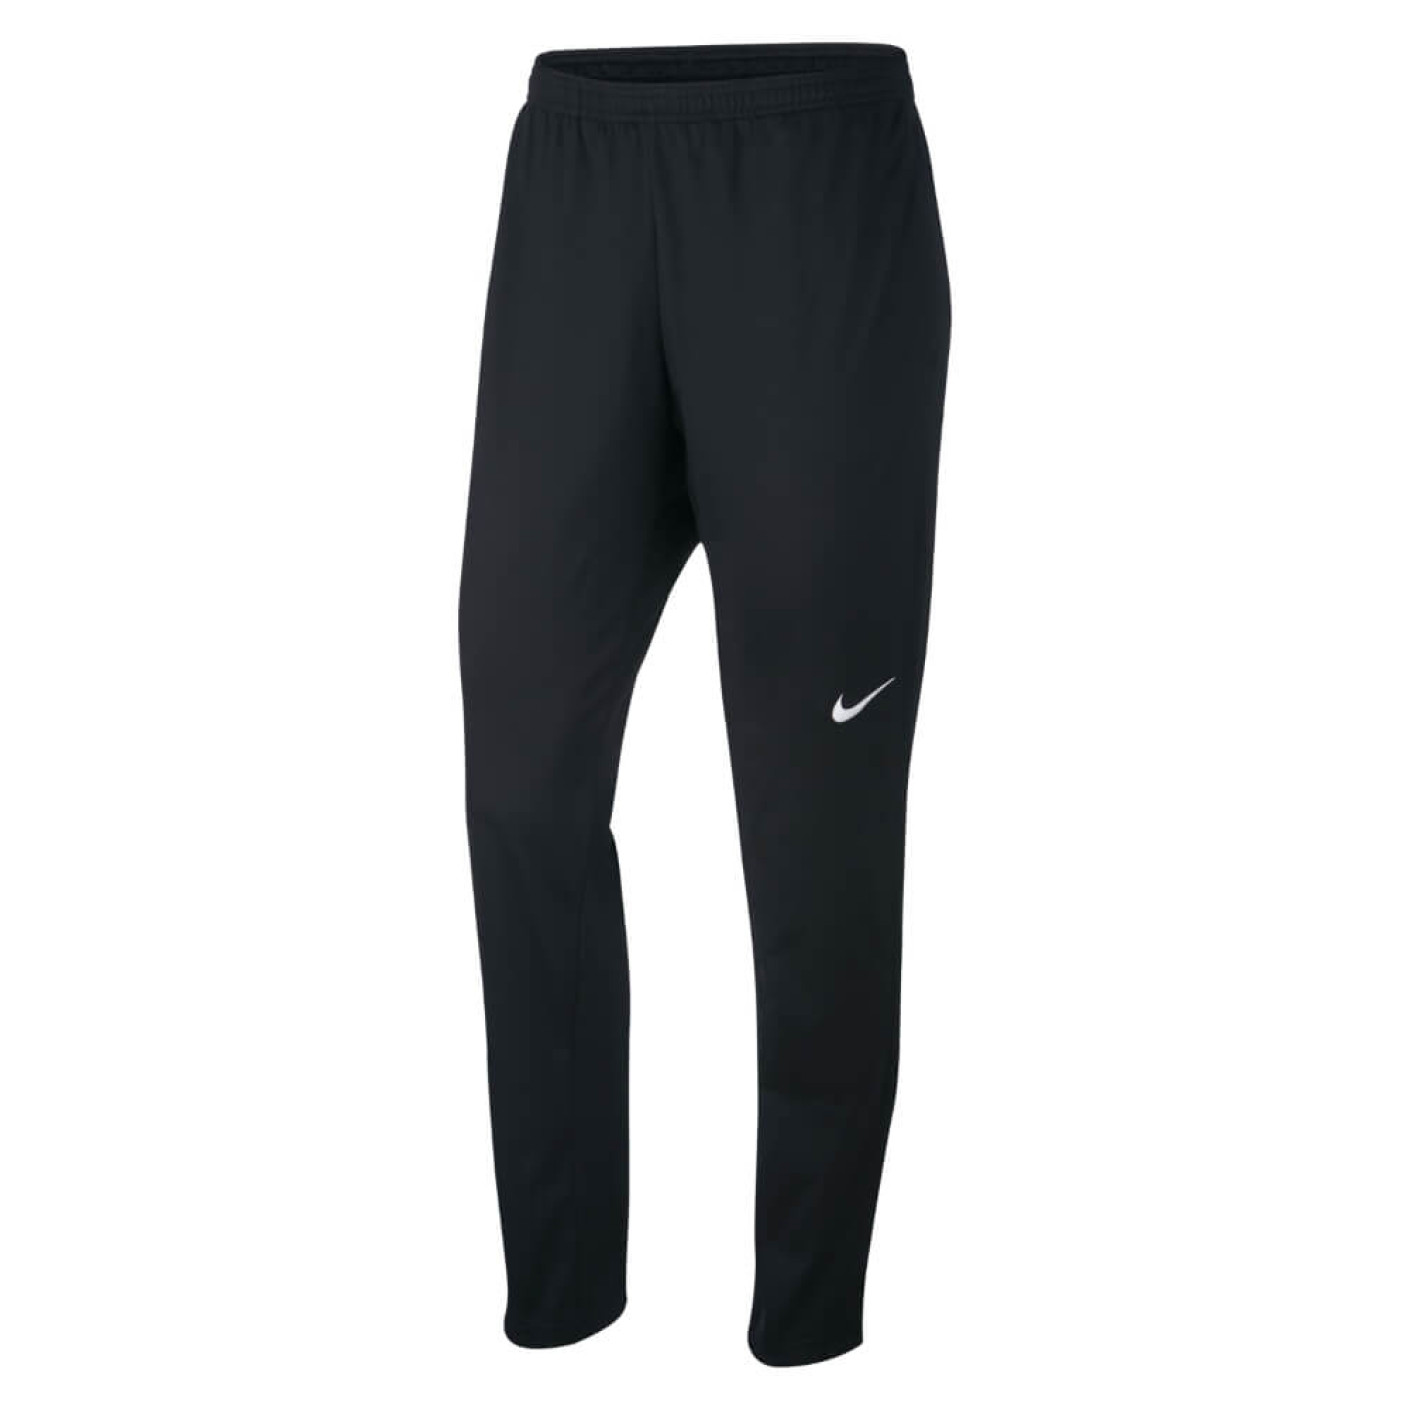 Nike Femmes Dry Academy 18 Pantalon d'entraînement KPZ Noir Noir